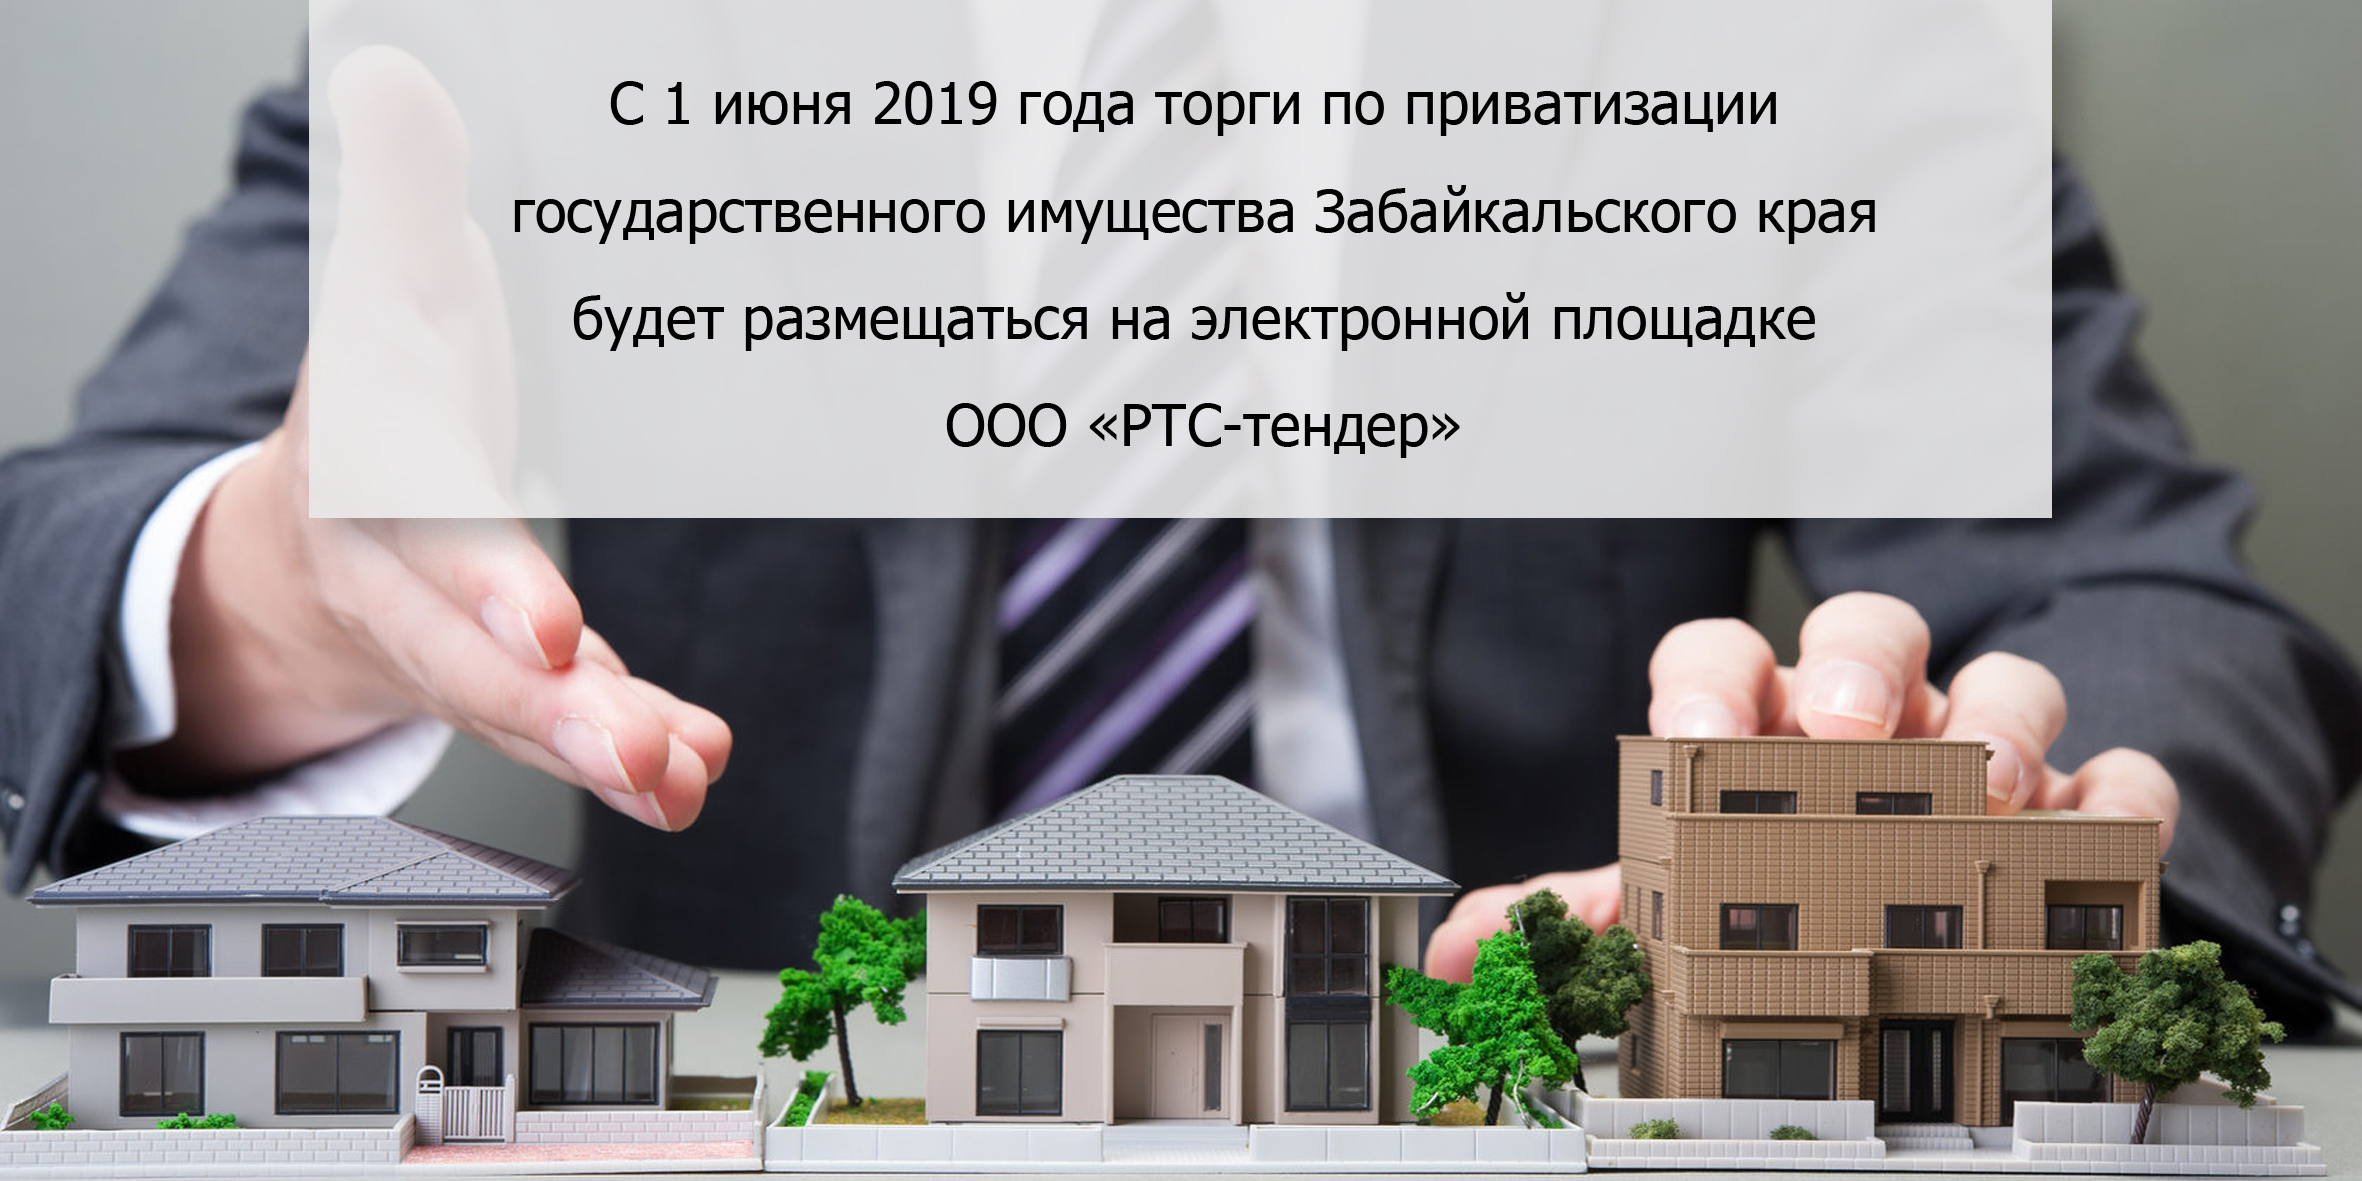 С 1 июня 2019 года торги по приватизации государственного имущества Забайкальского края будет размещаться на электронной площадке ООО «РТС-тендер»